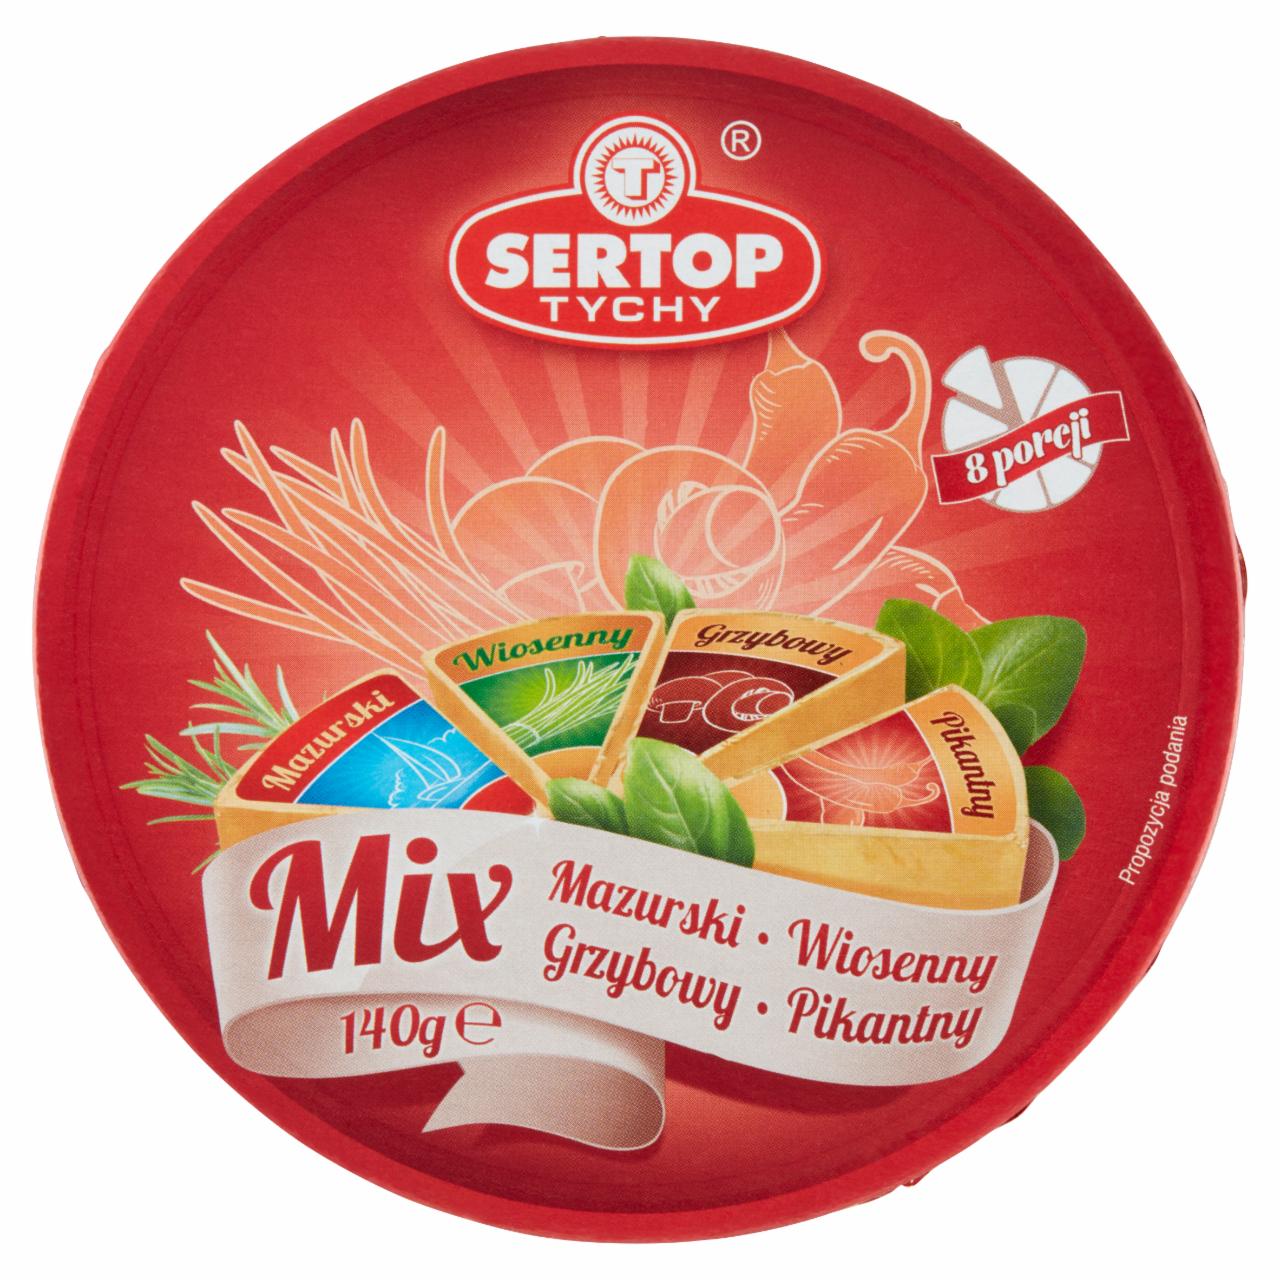 Zdjęcia - Sertop Tychy Mix Produkt seropodobny topiony 140 g (8 x 17,5 g)